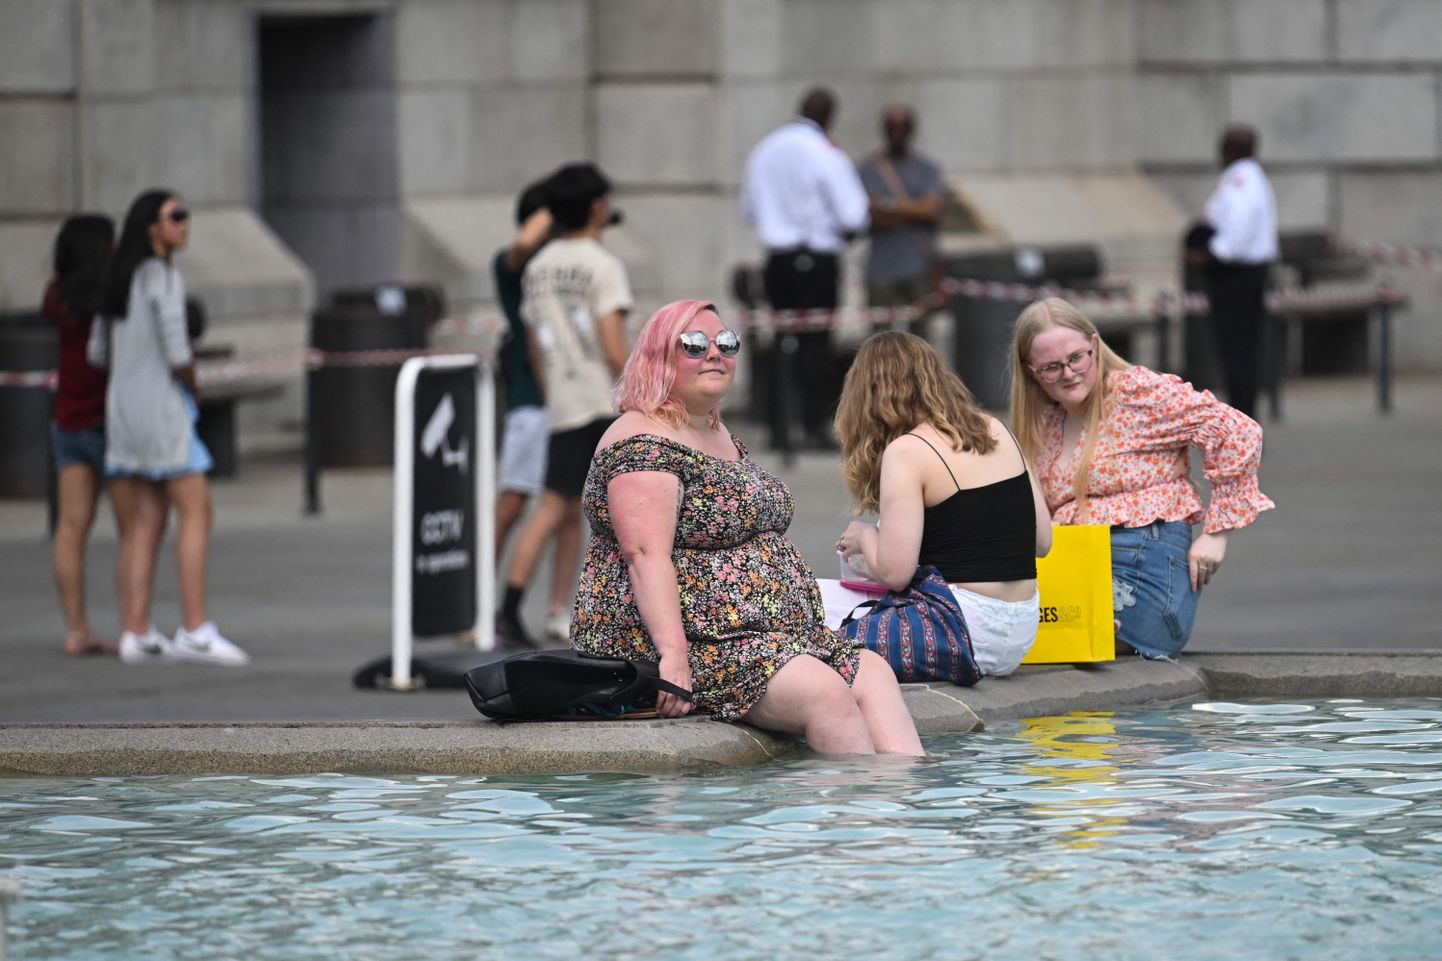 Jalakäijad Londonis Trafalgar Square'i purskkaevus 13. juulil jahutust otsimas. Toona kerkis temperatuur Londonis 33 kraadini. Uue nädala alguses oodatakse 41-kraadist kuuma ning senise riigi kuumarekordi purustamist.